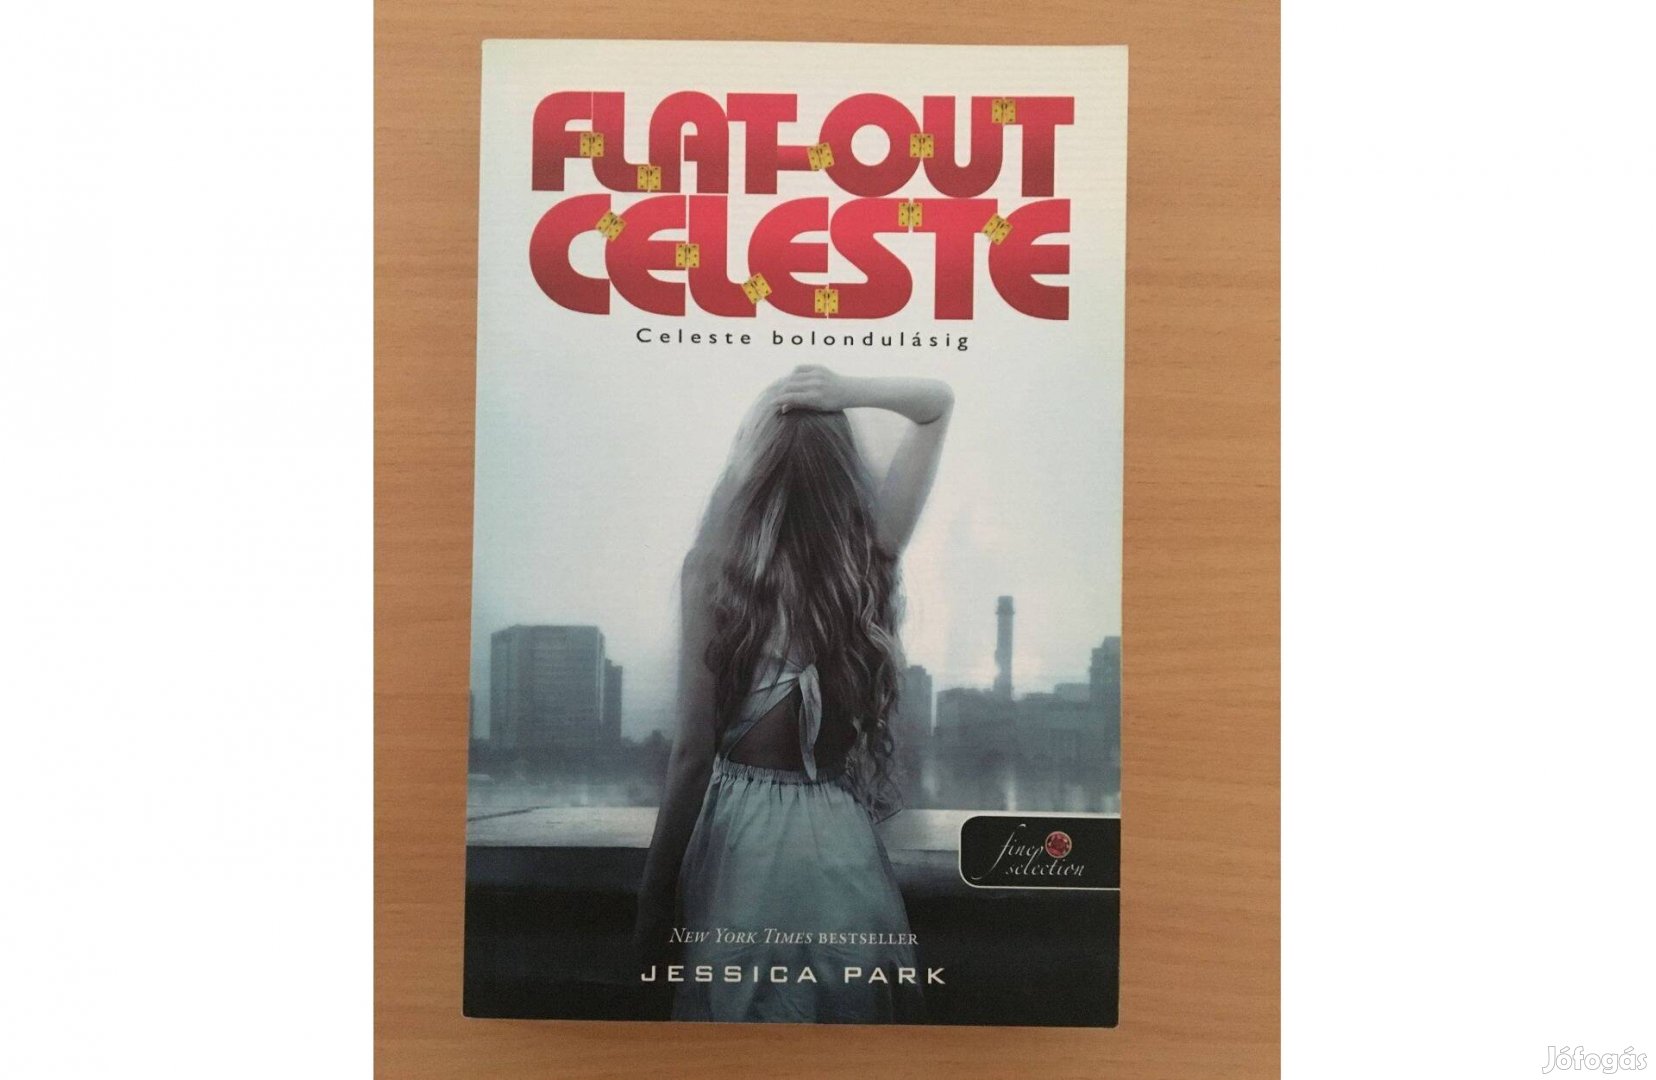 Jessica Park: Flat-Out-Celeste - Celeste bolondulásig című könyv